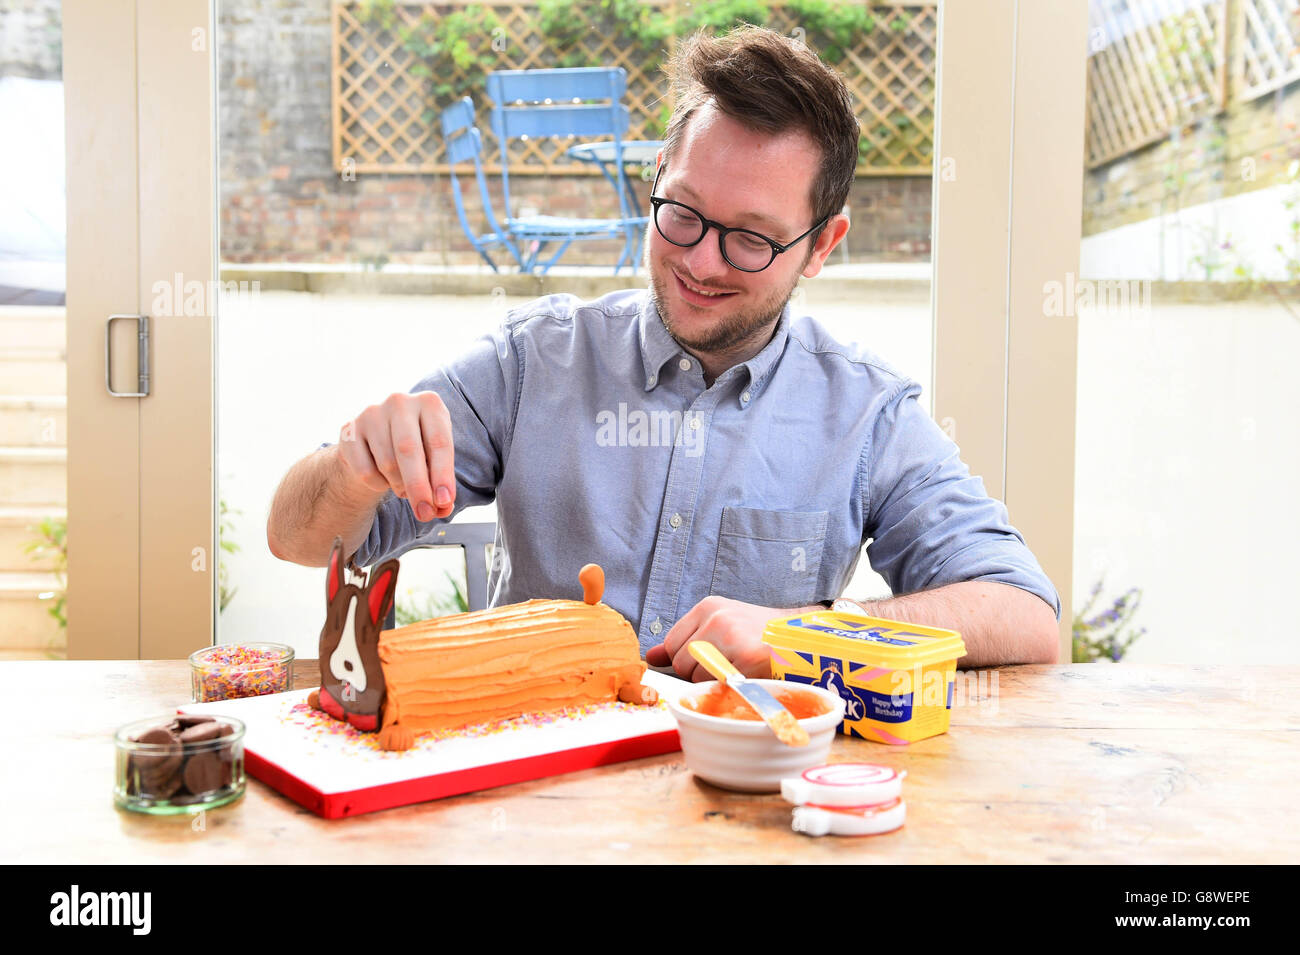 EDD Kimber, vincitore della BBC's Great British Bake Off, crea una torta di compleanno "Candy the Corgi" utilizzando Stork con burro per celebrare il 90° compleanno della regina Elisabetta II. Foto Stock